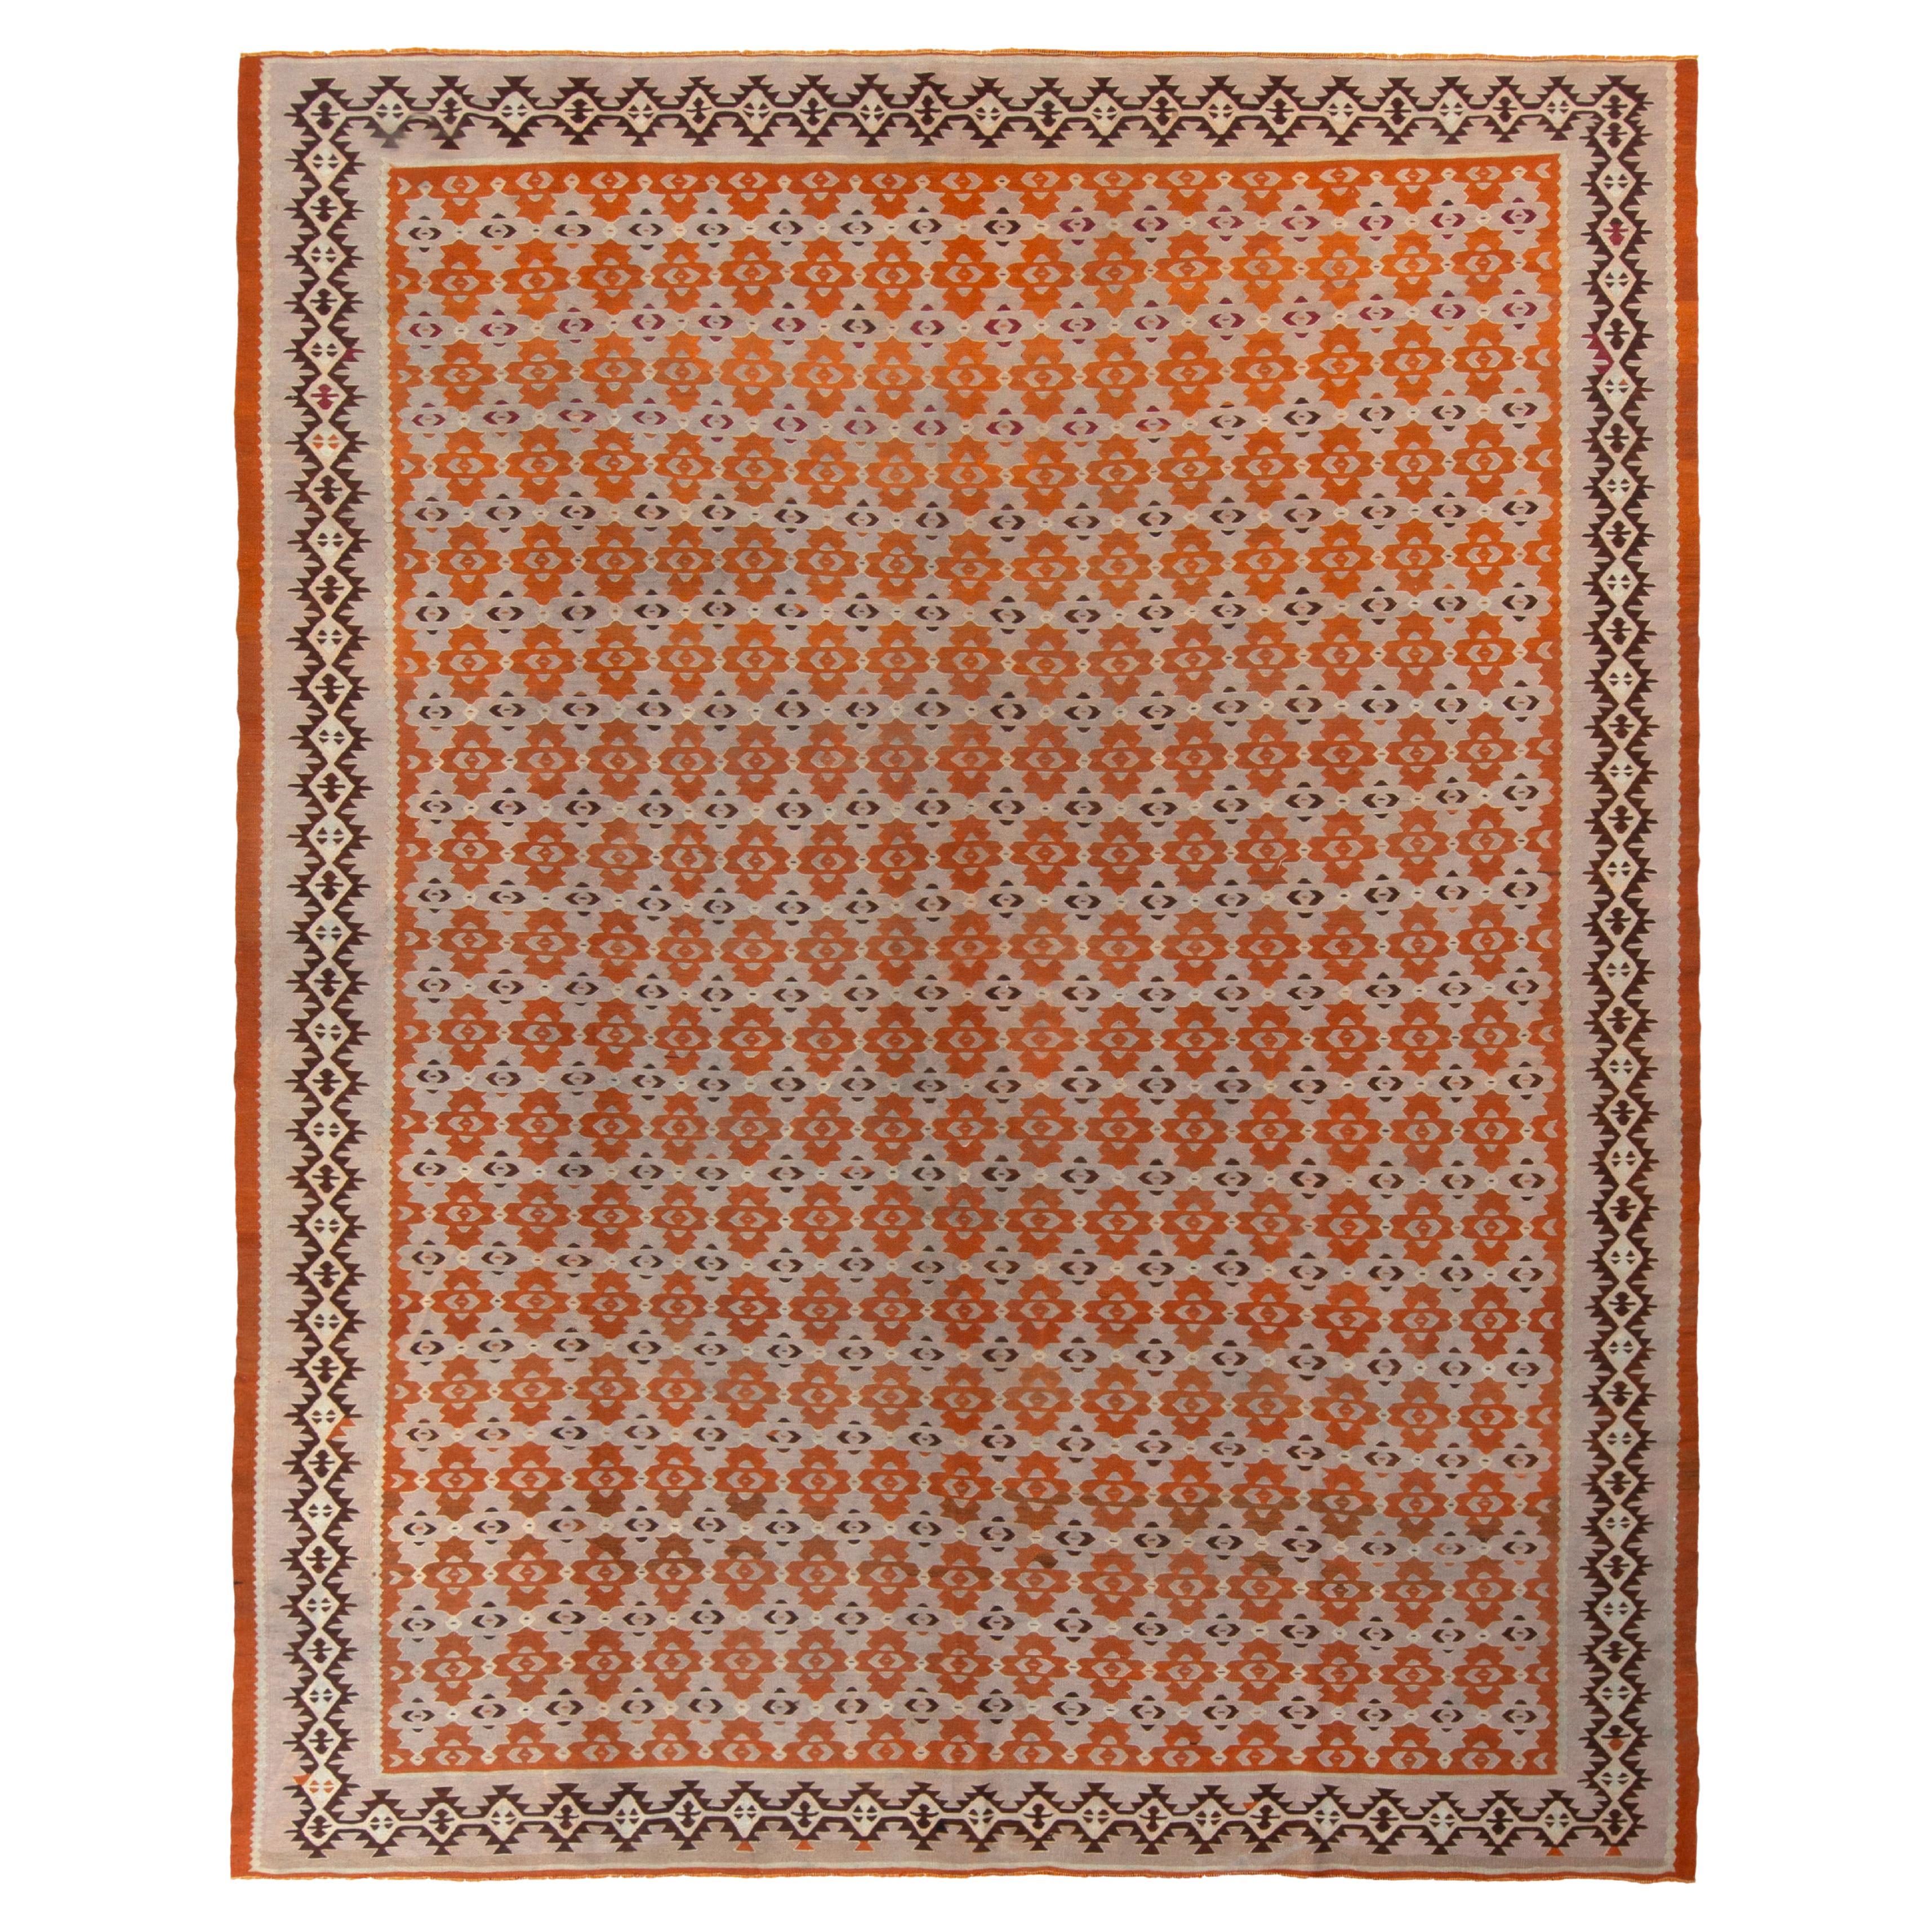 Handwoven Vintage Kilim Rug in Pink, Brown Geometric Pattern by Rug & Kilim For Sale